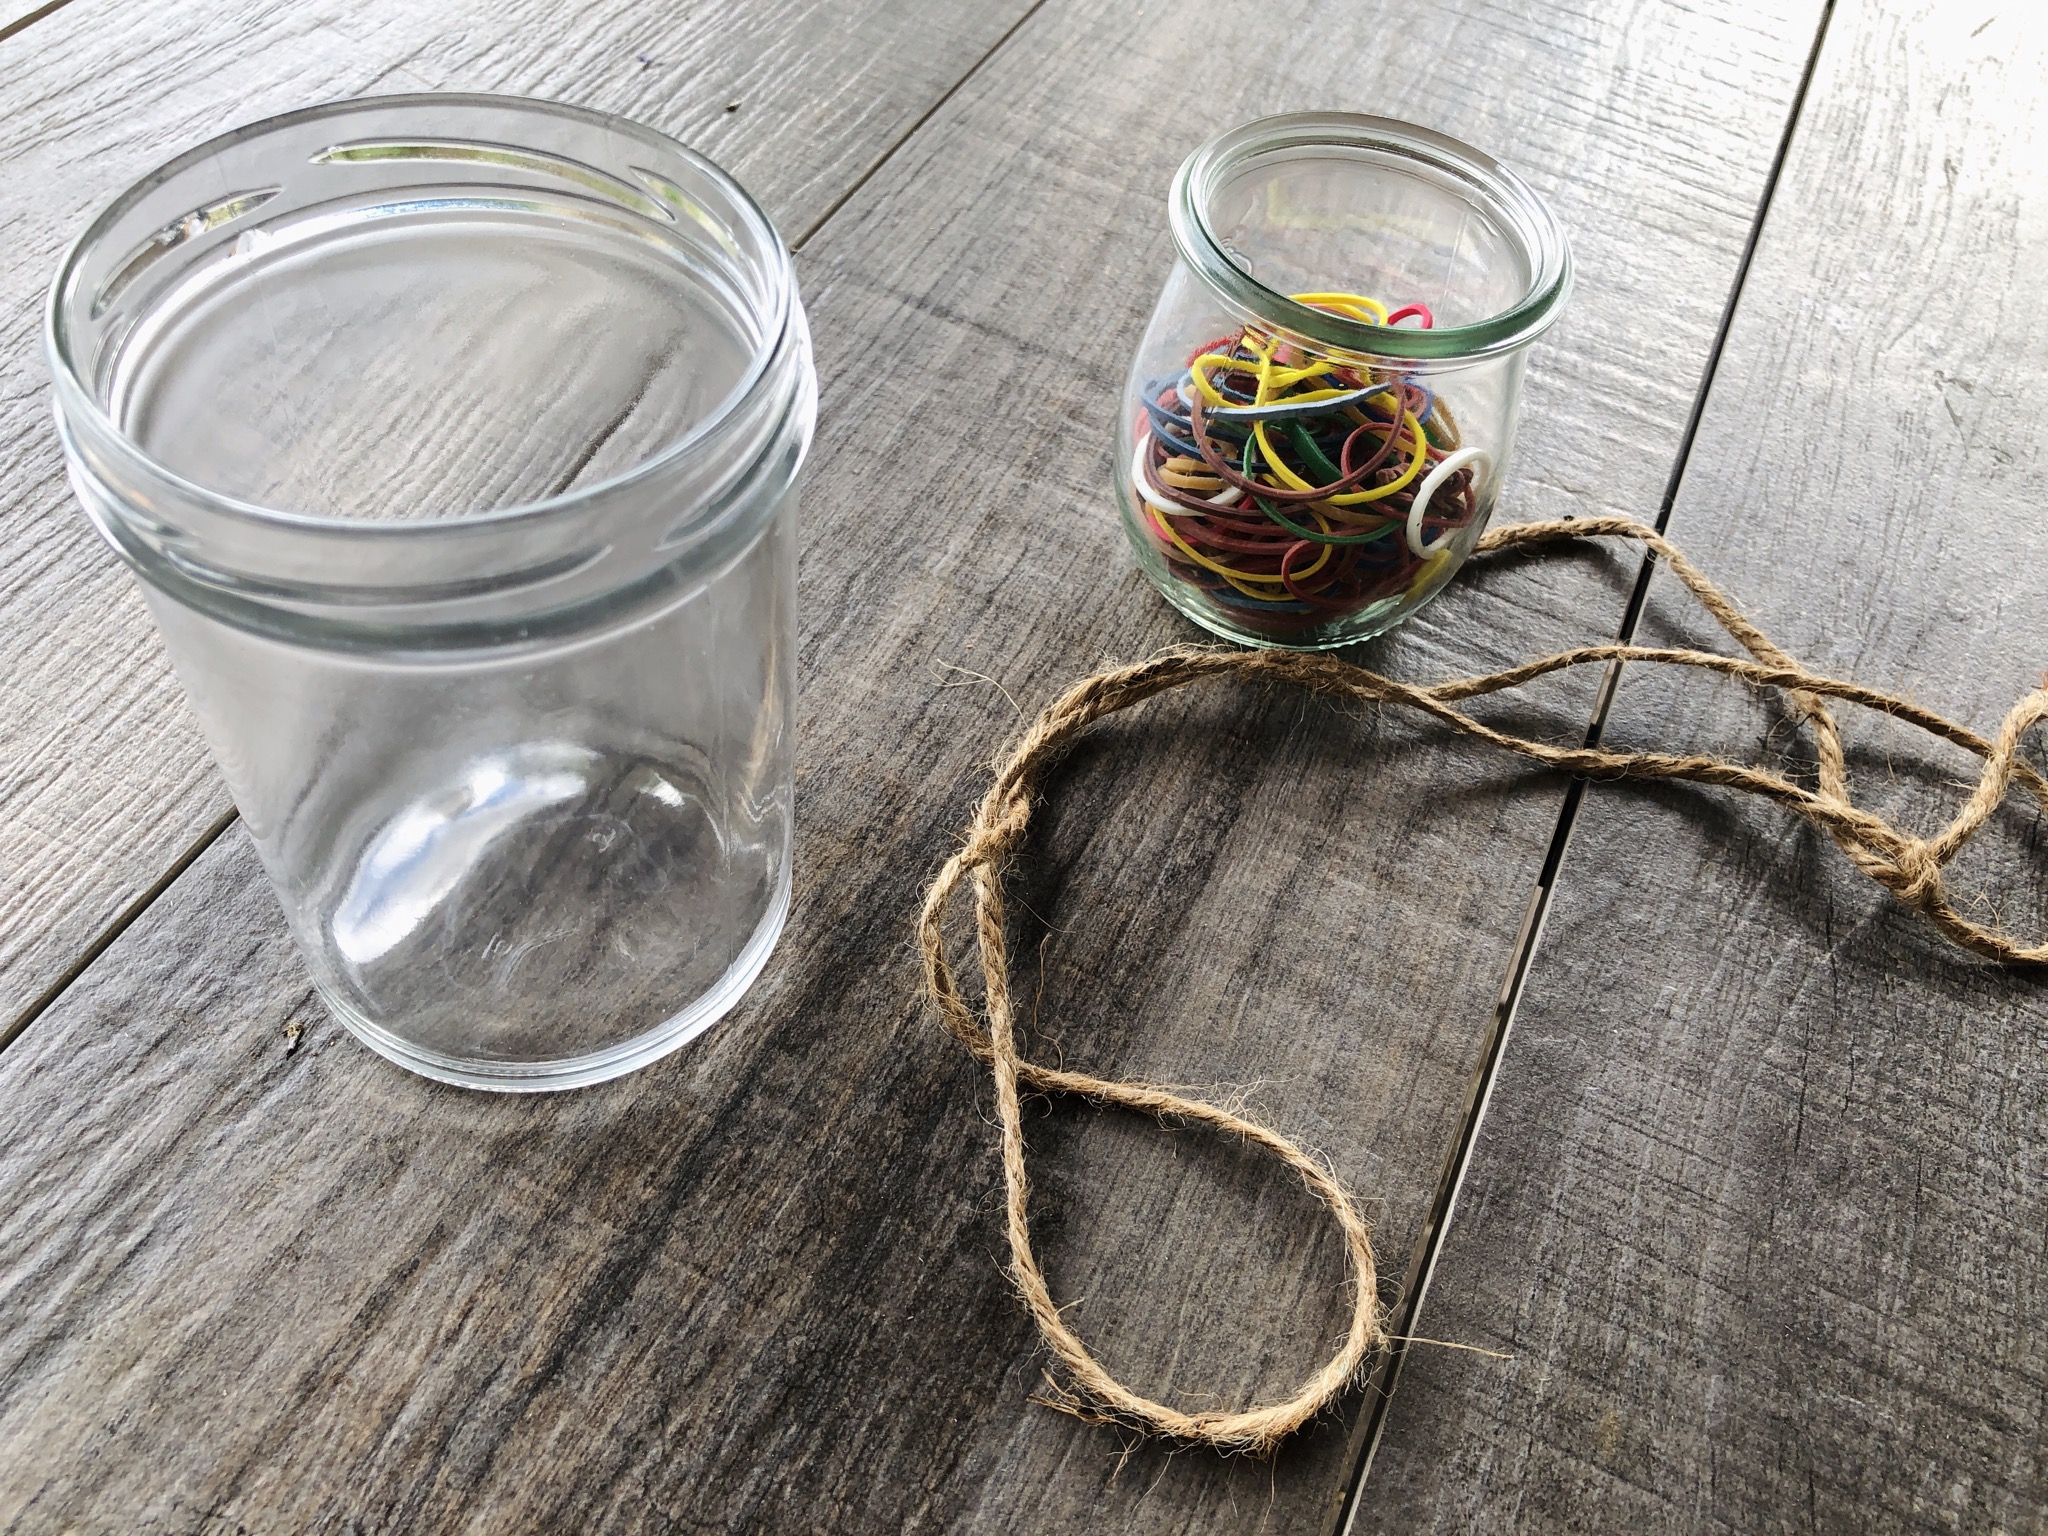 Bild zum Schritt 2 für das Bastel- und DIY-Abenteuer für Kinder: 'Glas, Haushaltsgummi und Schnur bereit legen.'